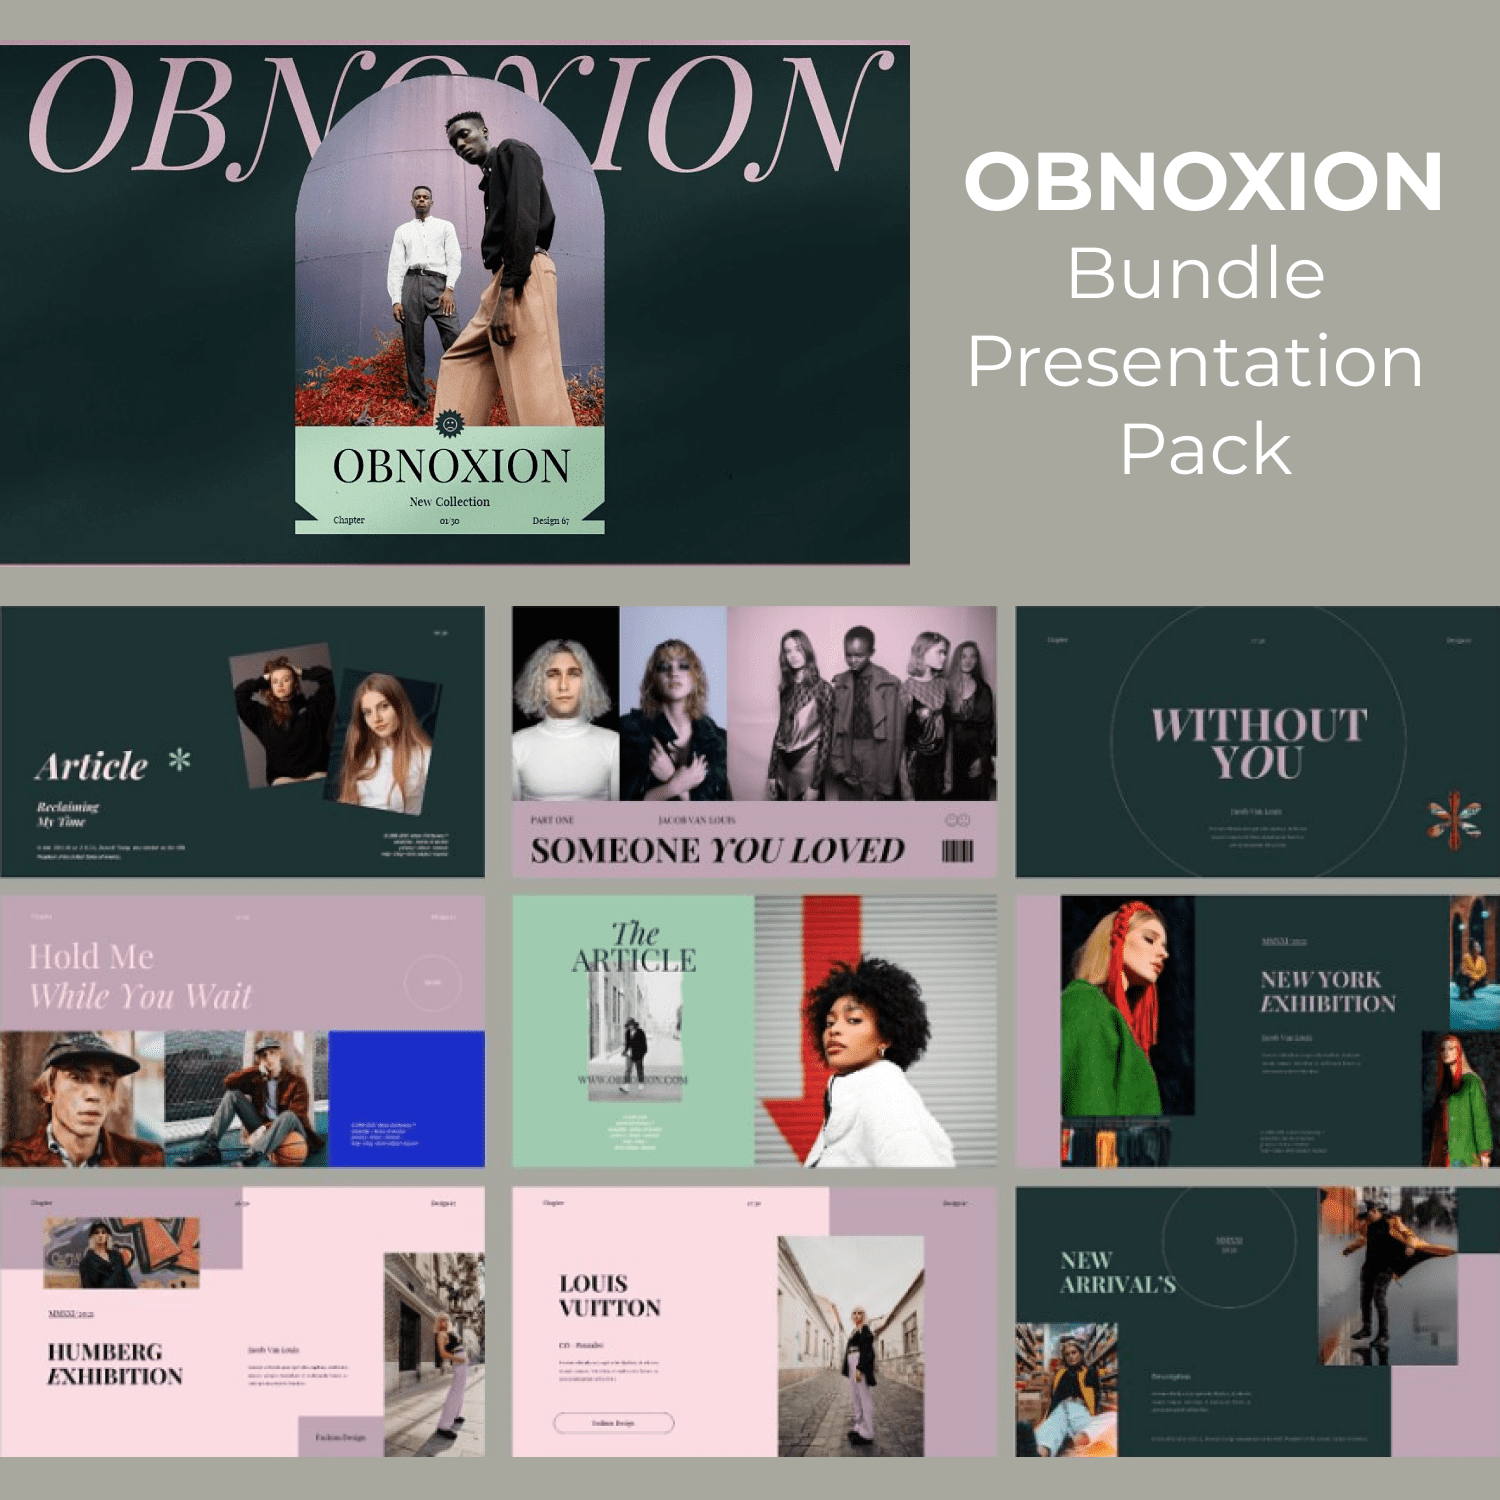 OBNOXION-Bundle Presentation Pack cover image.